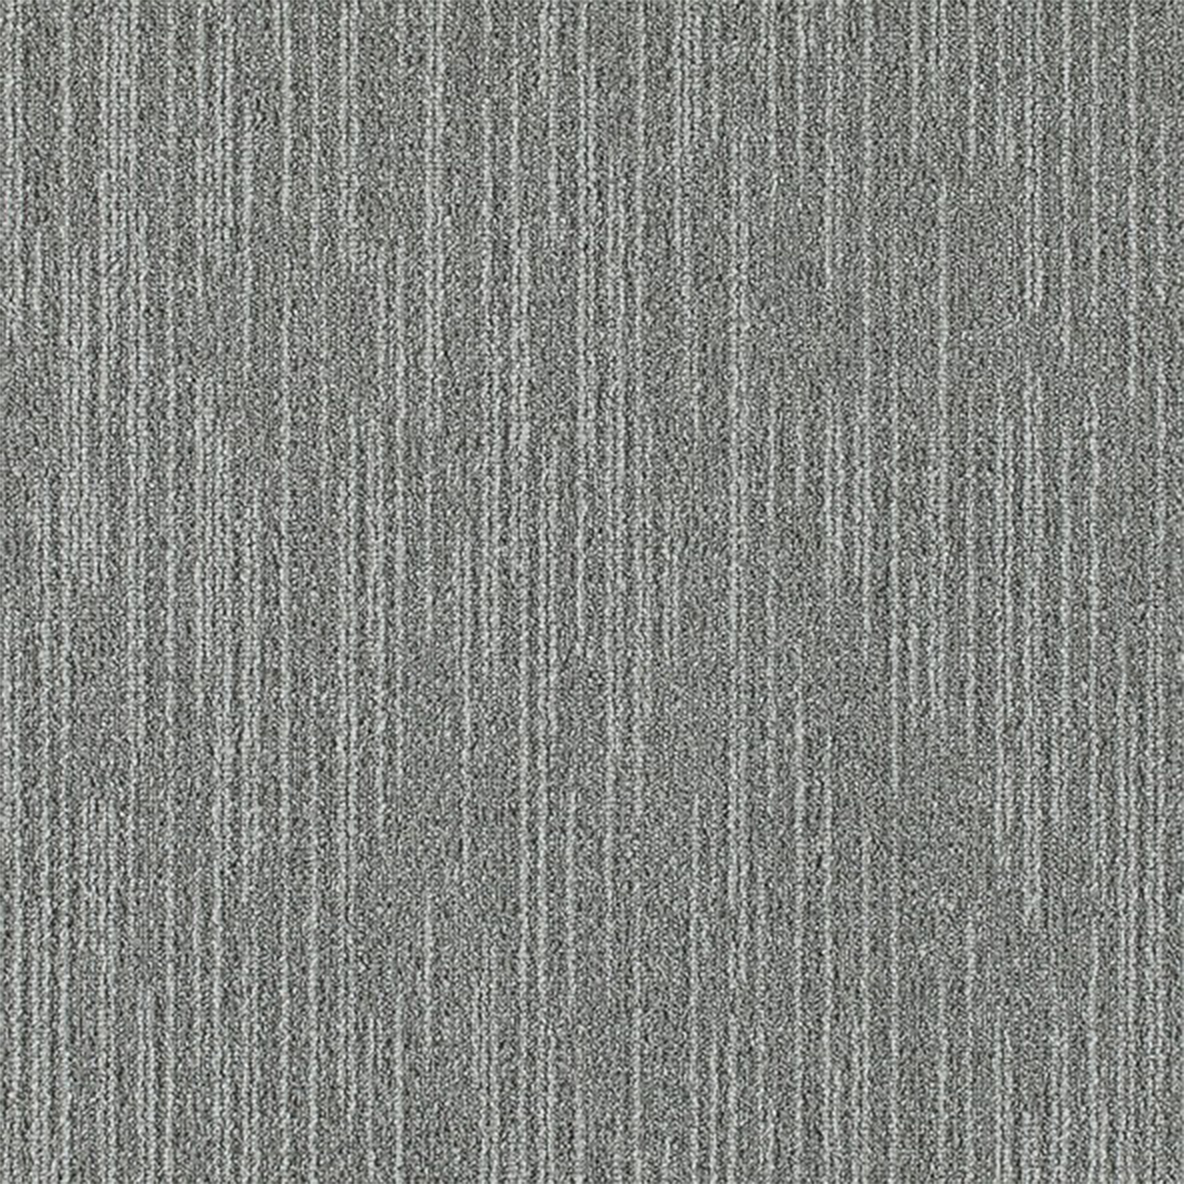 Overdirve Commercial Carpet Tile .30 Inch x 50x50 cm per Tile Silverstone color close up